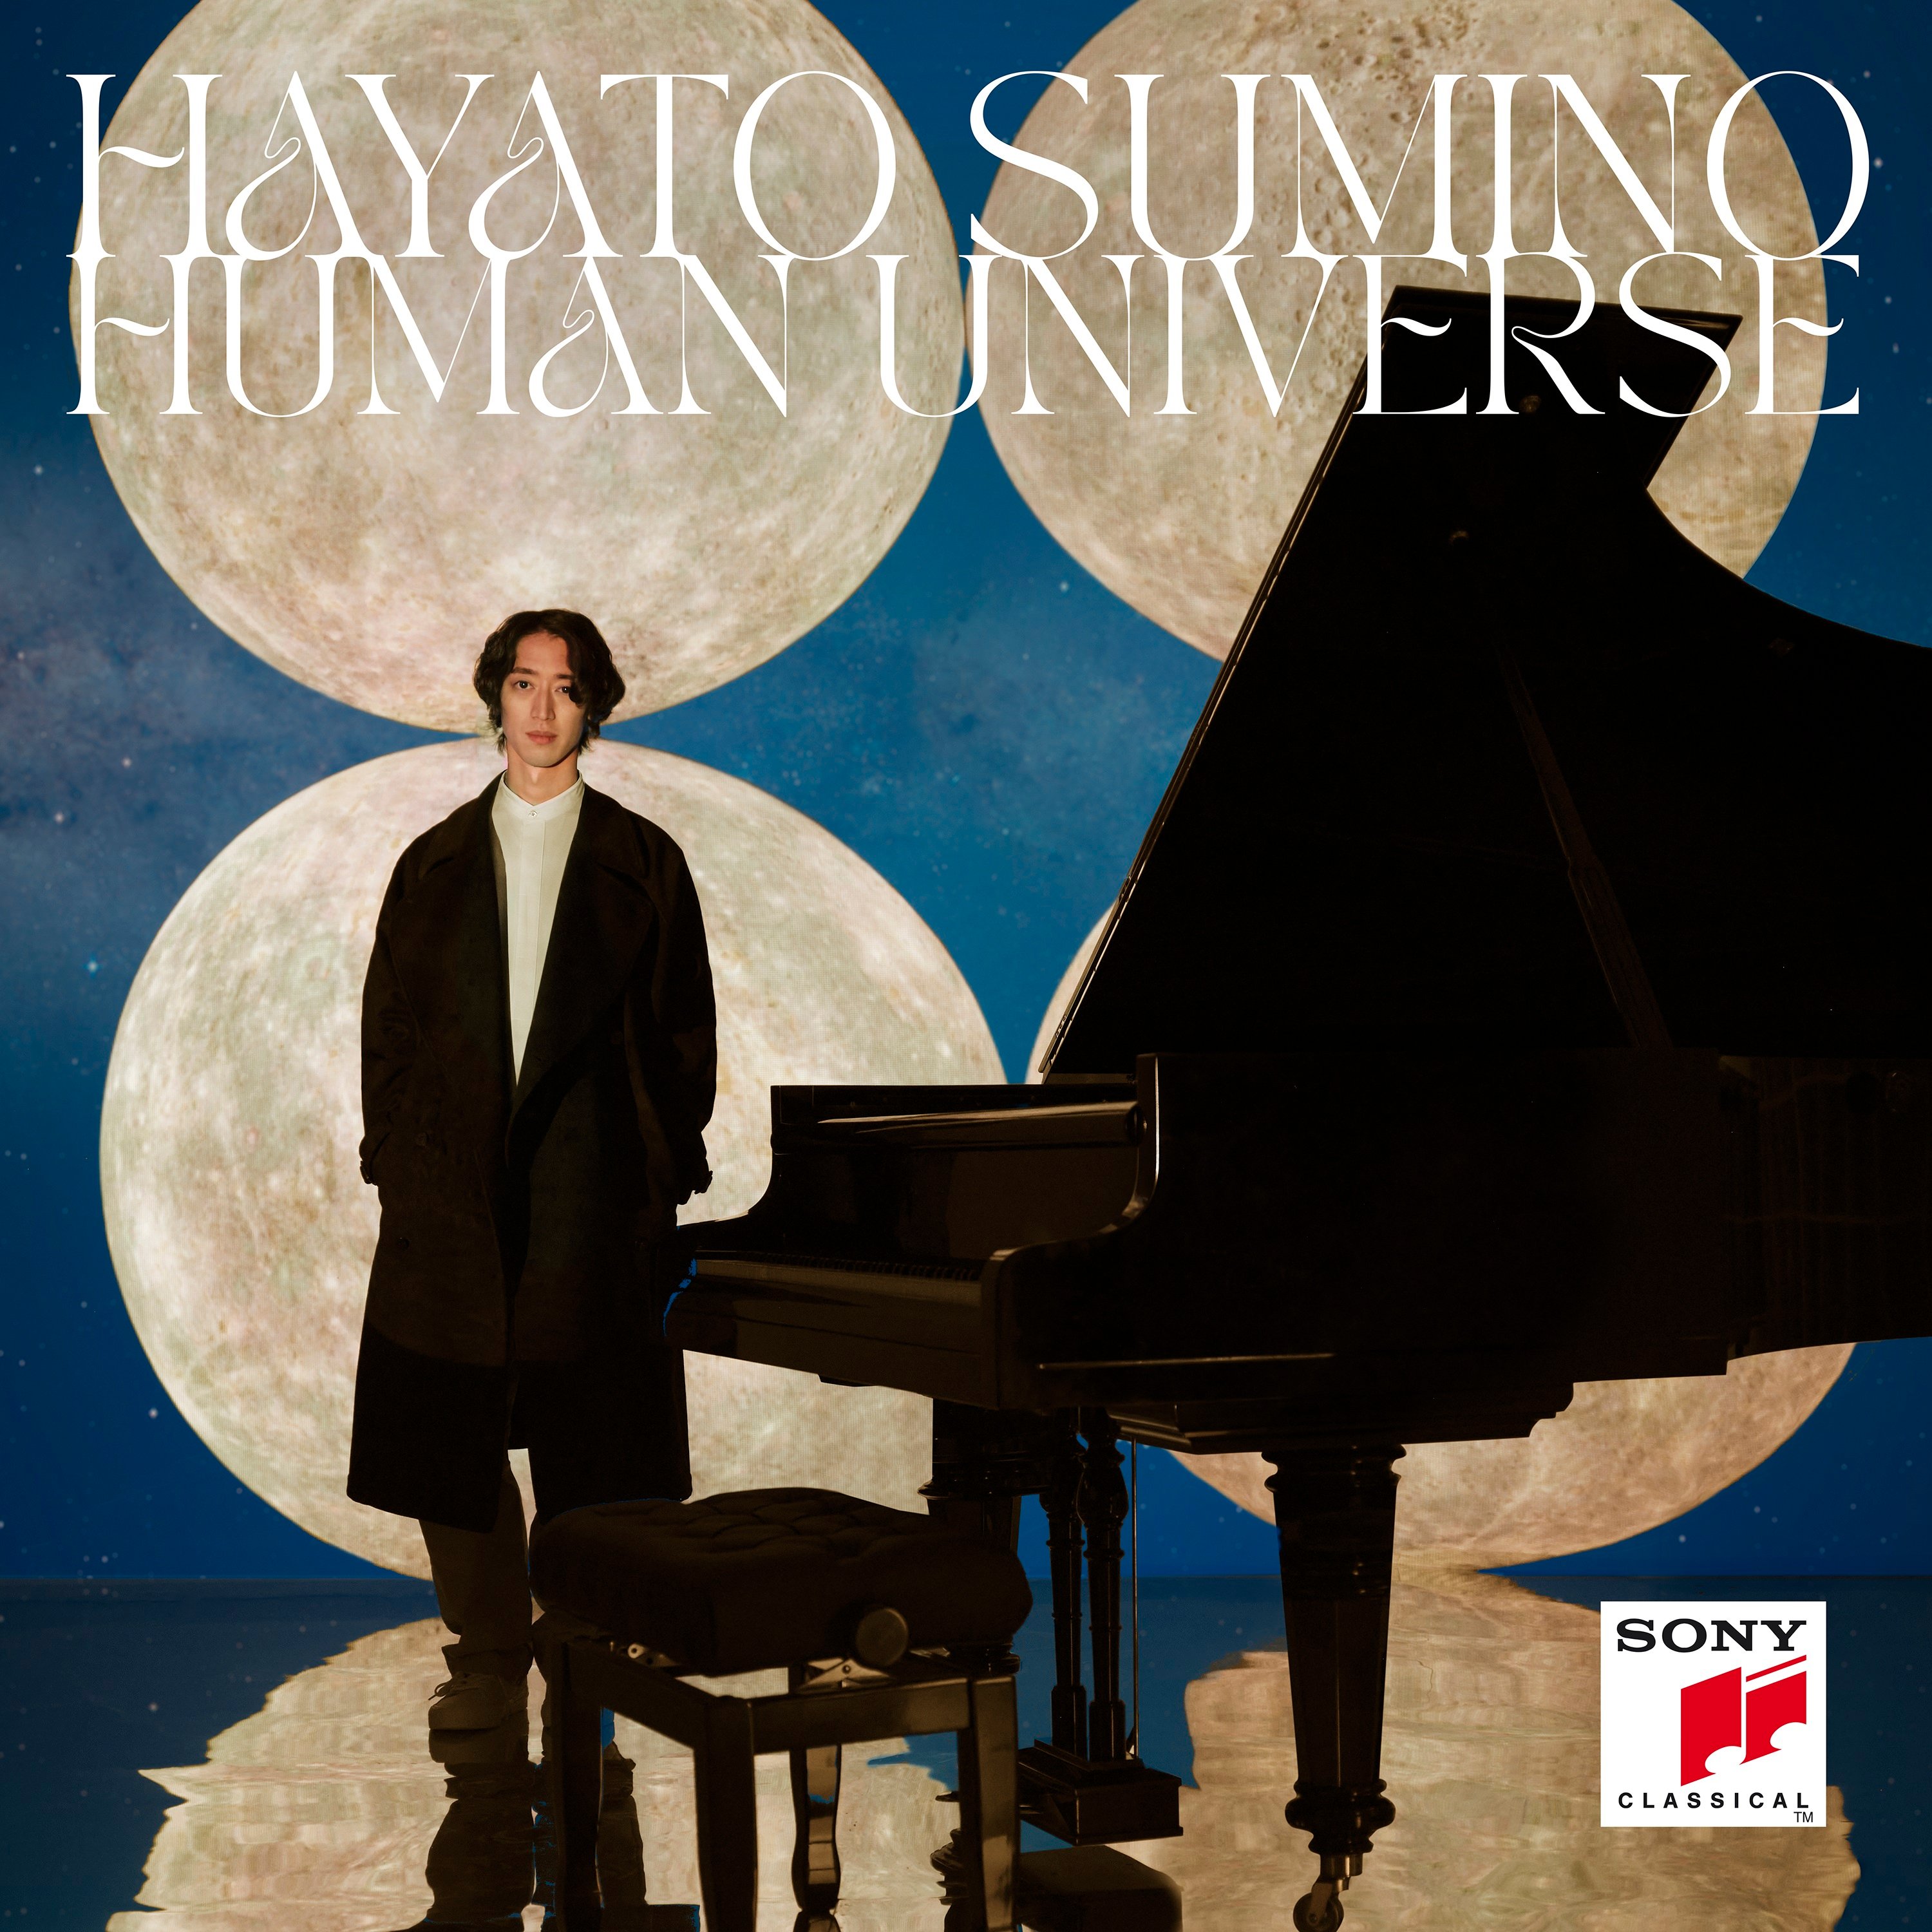 Hayato Sumino